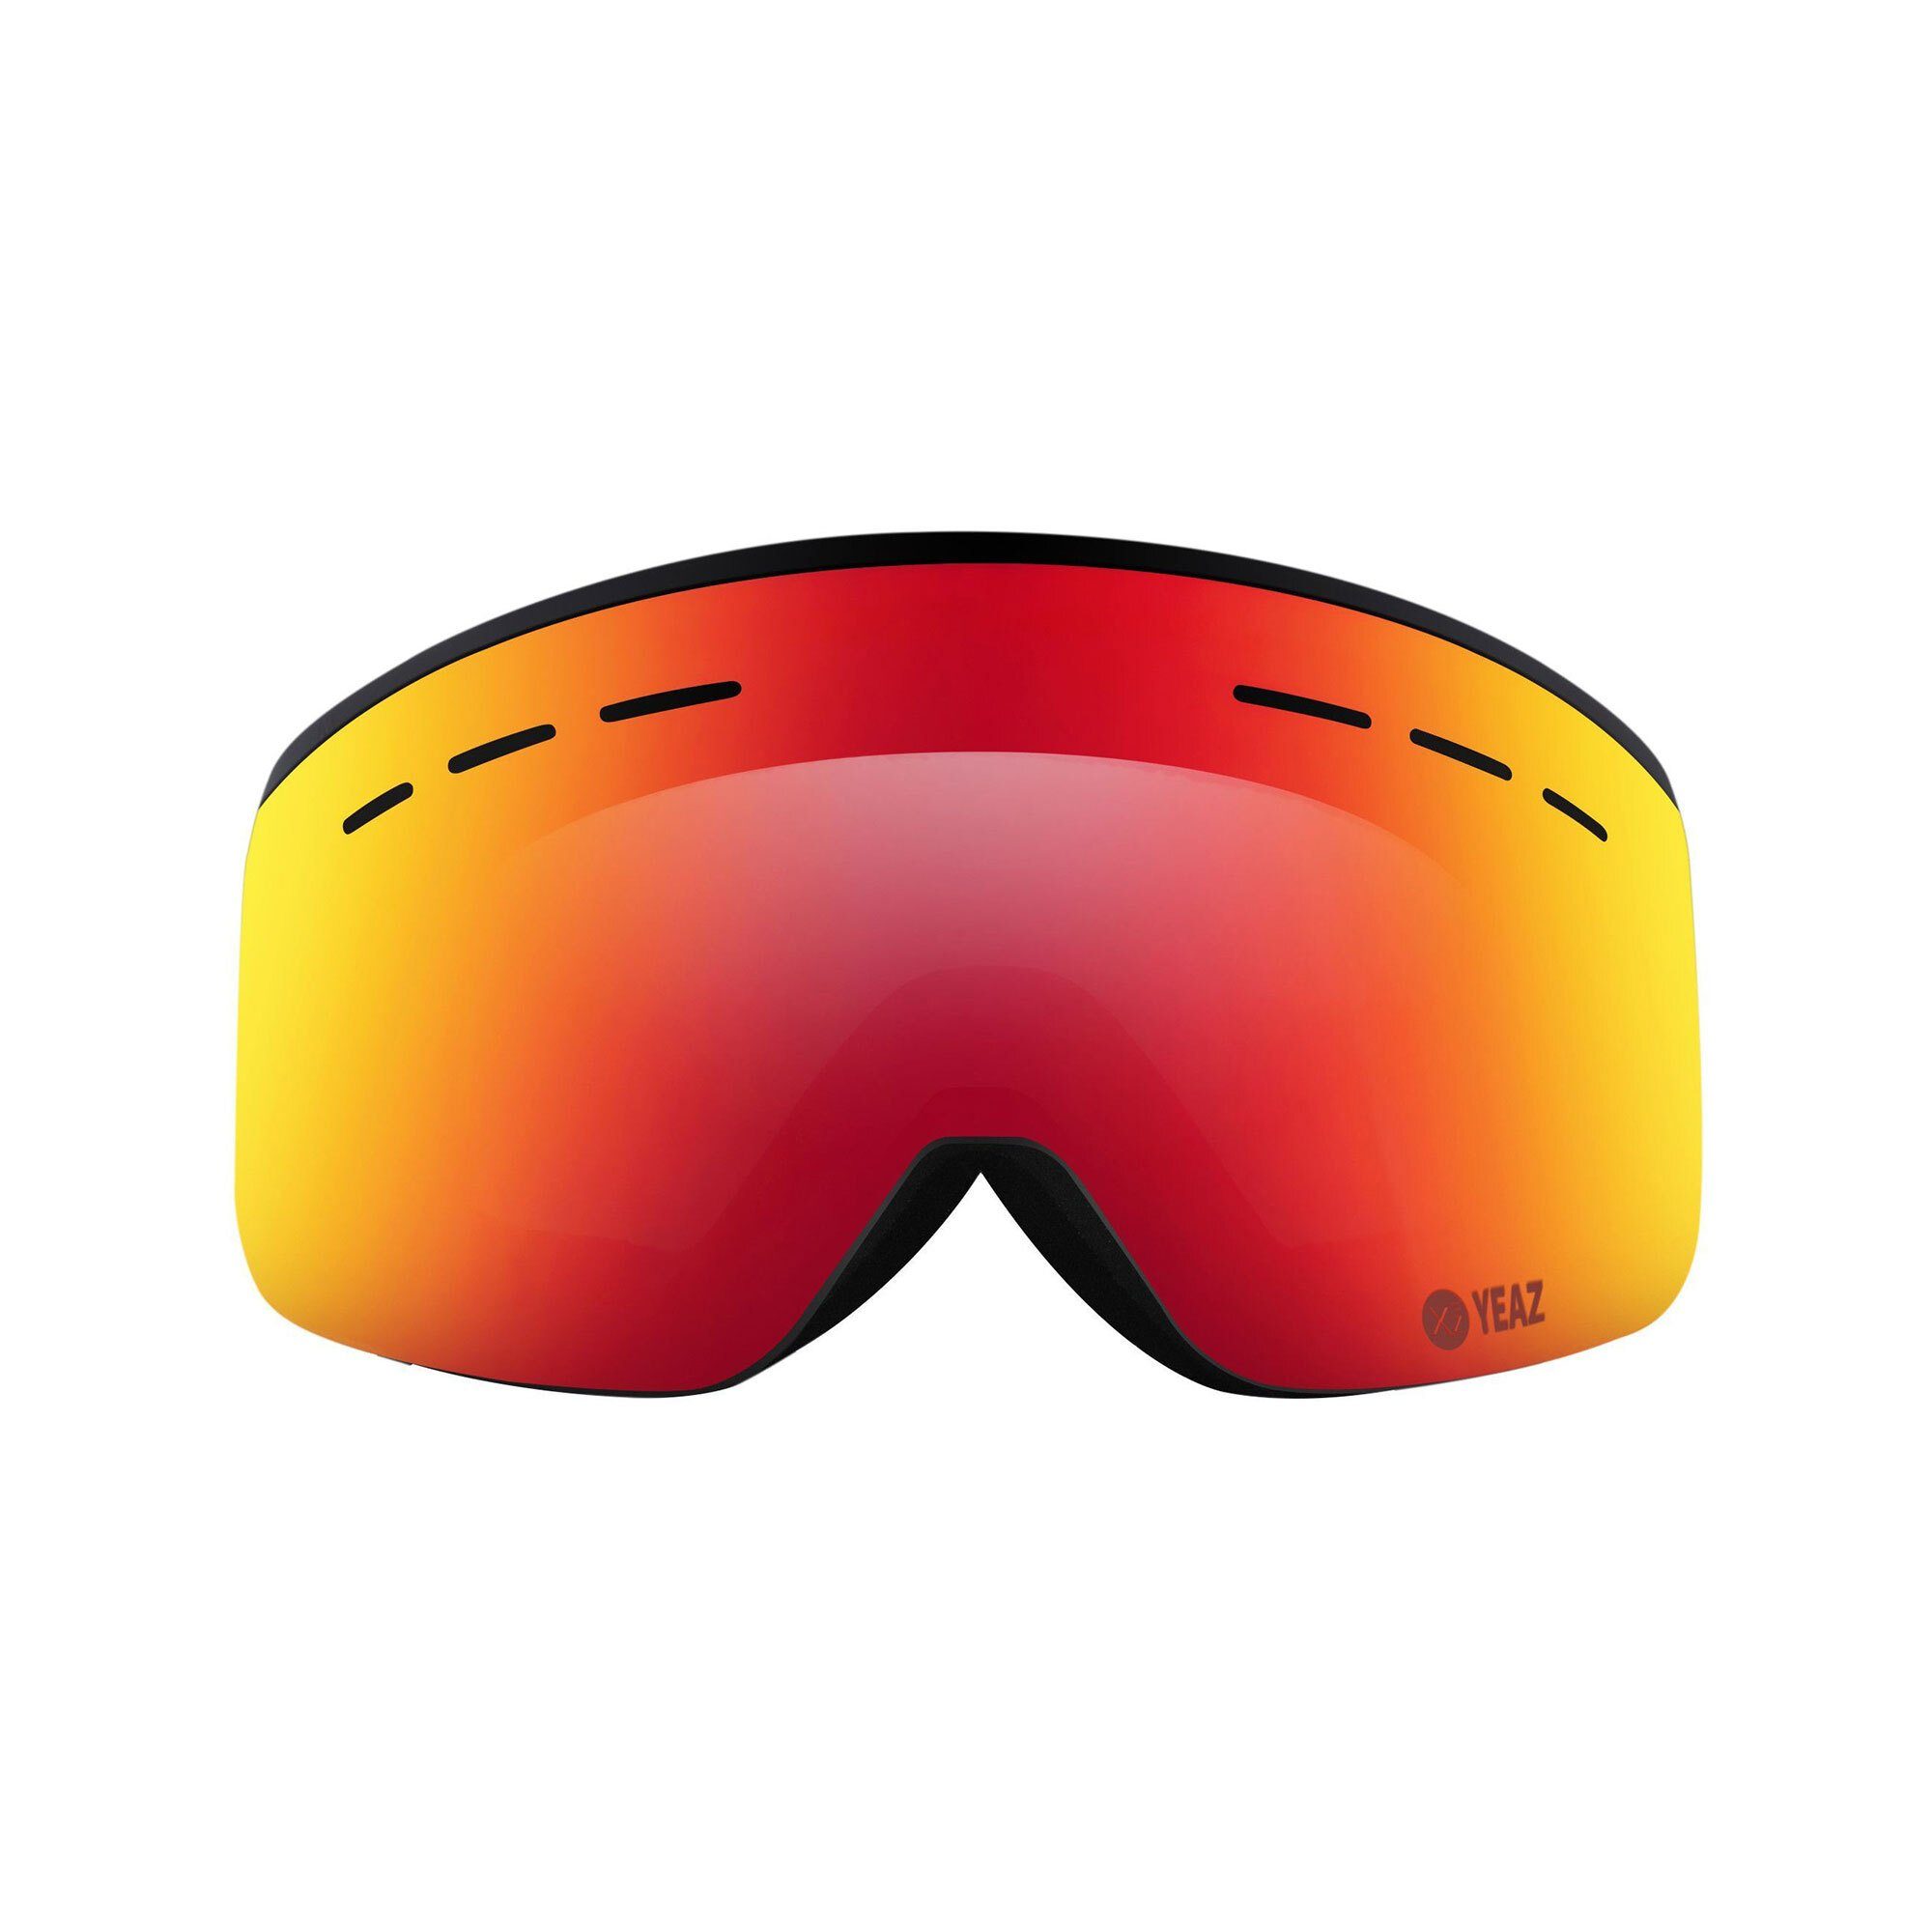 YEAZ Skibrille RISE ski- snowboardbrille und und Snowboardbrille Jugendliche für Erwachsene Premium-Ski- schwarz